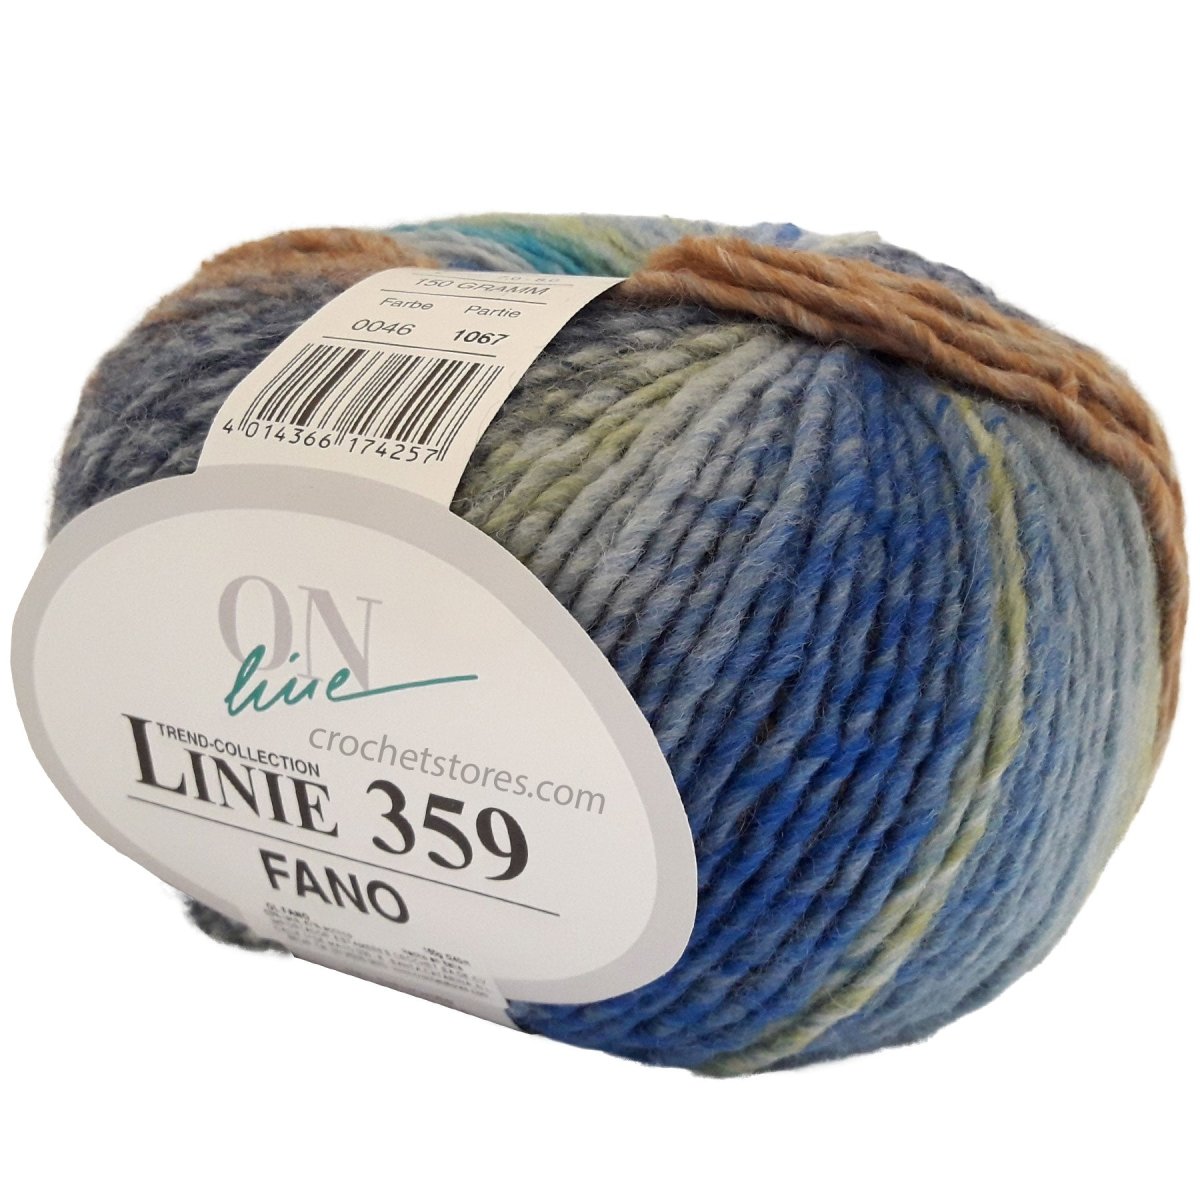 FANO - Crochetstores110359-0044014366152538